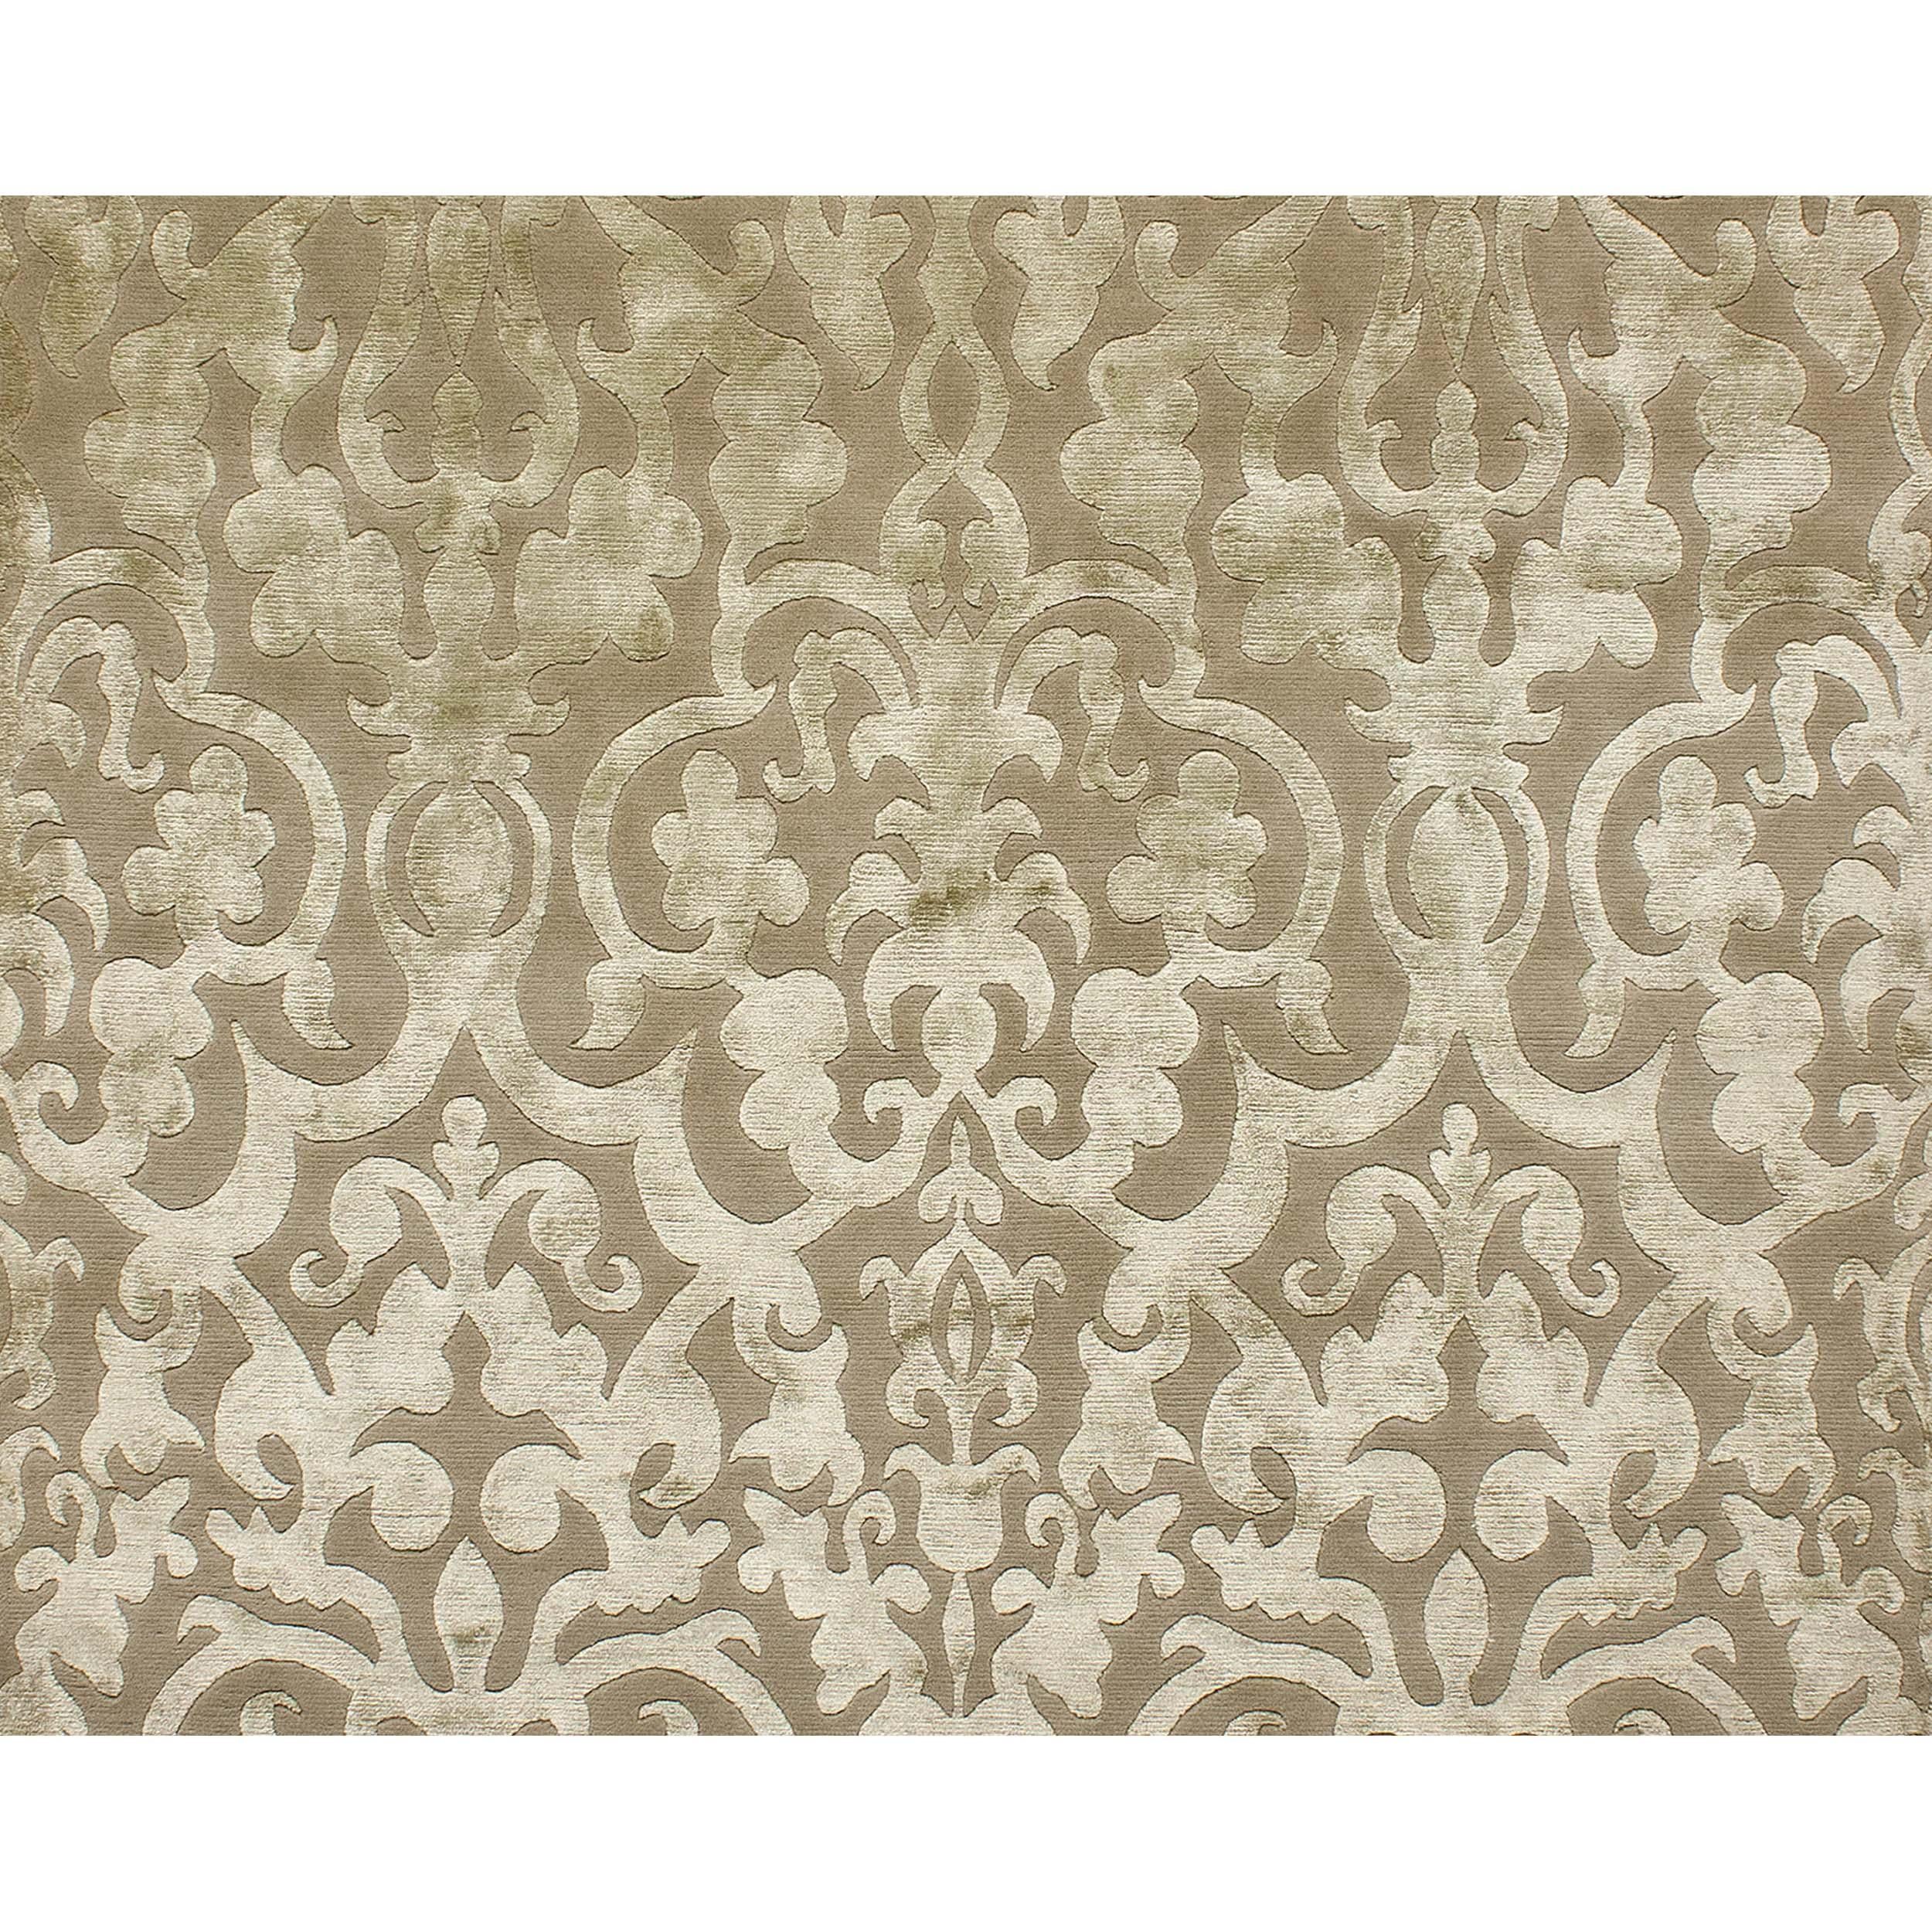 Dieser exquisite, moderne, handgeknüpfte Teppich aus Indien ist ein Erlebnis für die Sinne und besticht durch sein üppiges, handgewebtes Design, das sowohl den Tastsinn als auch das Auge anspricht. Eine einzigartige Mischung aus Wolle und glänzender